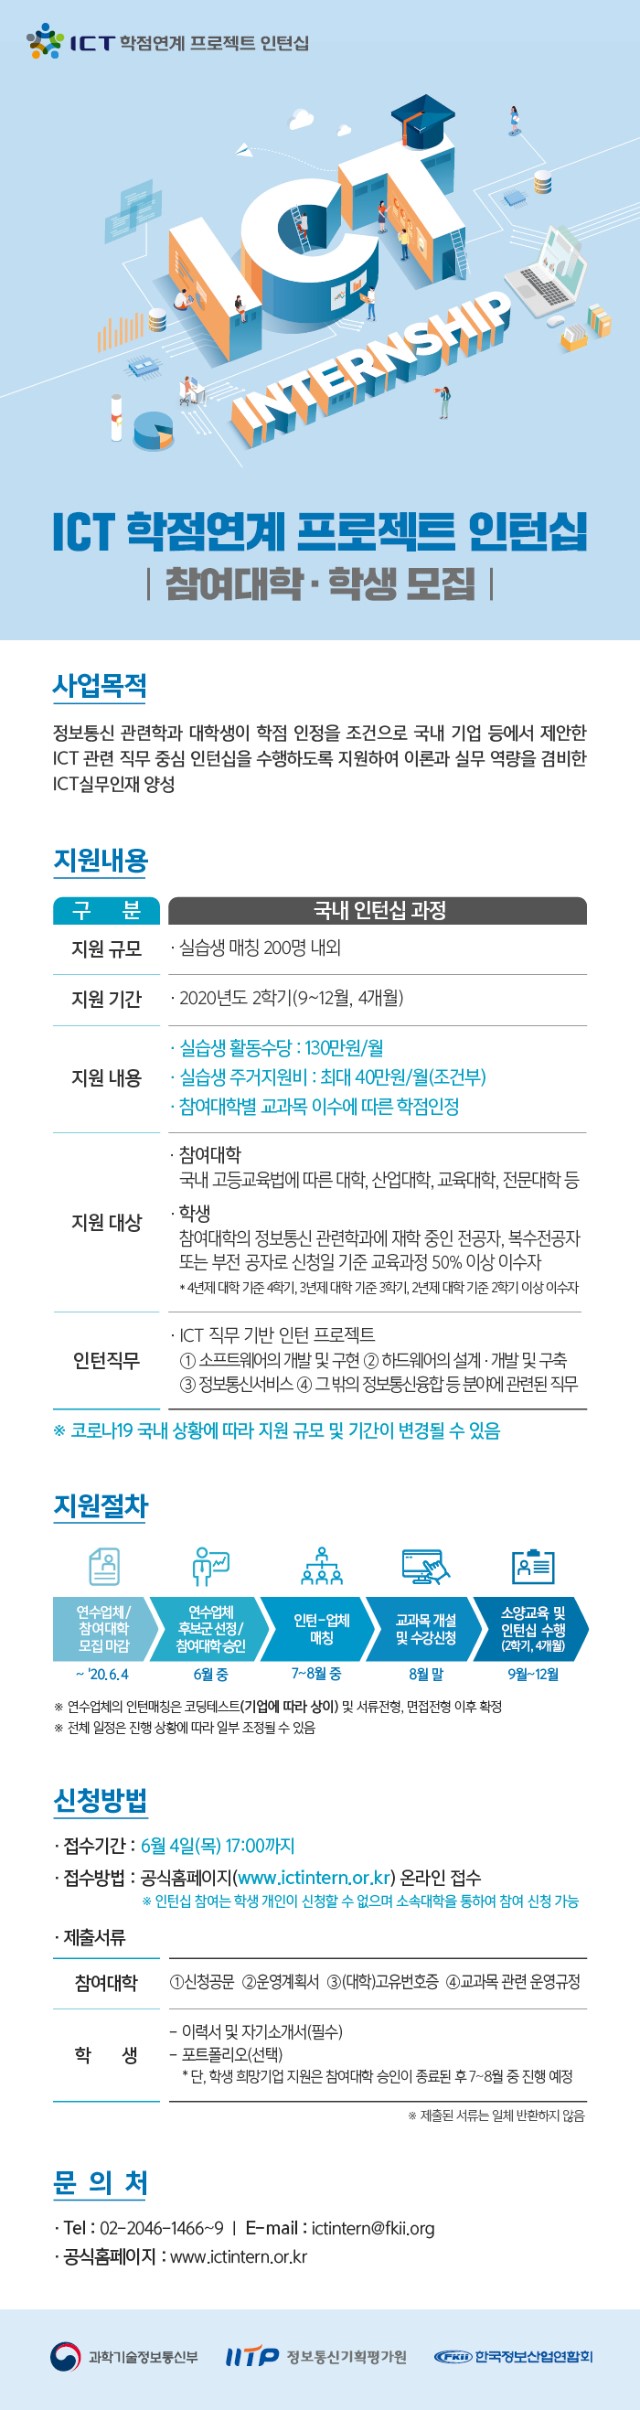 [붙임3] 2020년 하반기 국내과정 홍보물(웹플라이어)_대학용.jpg